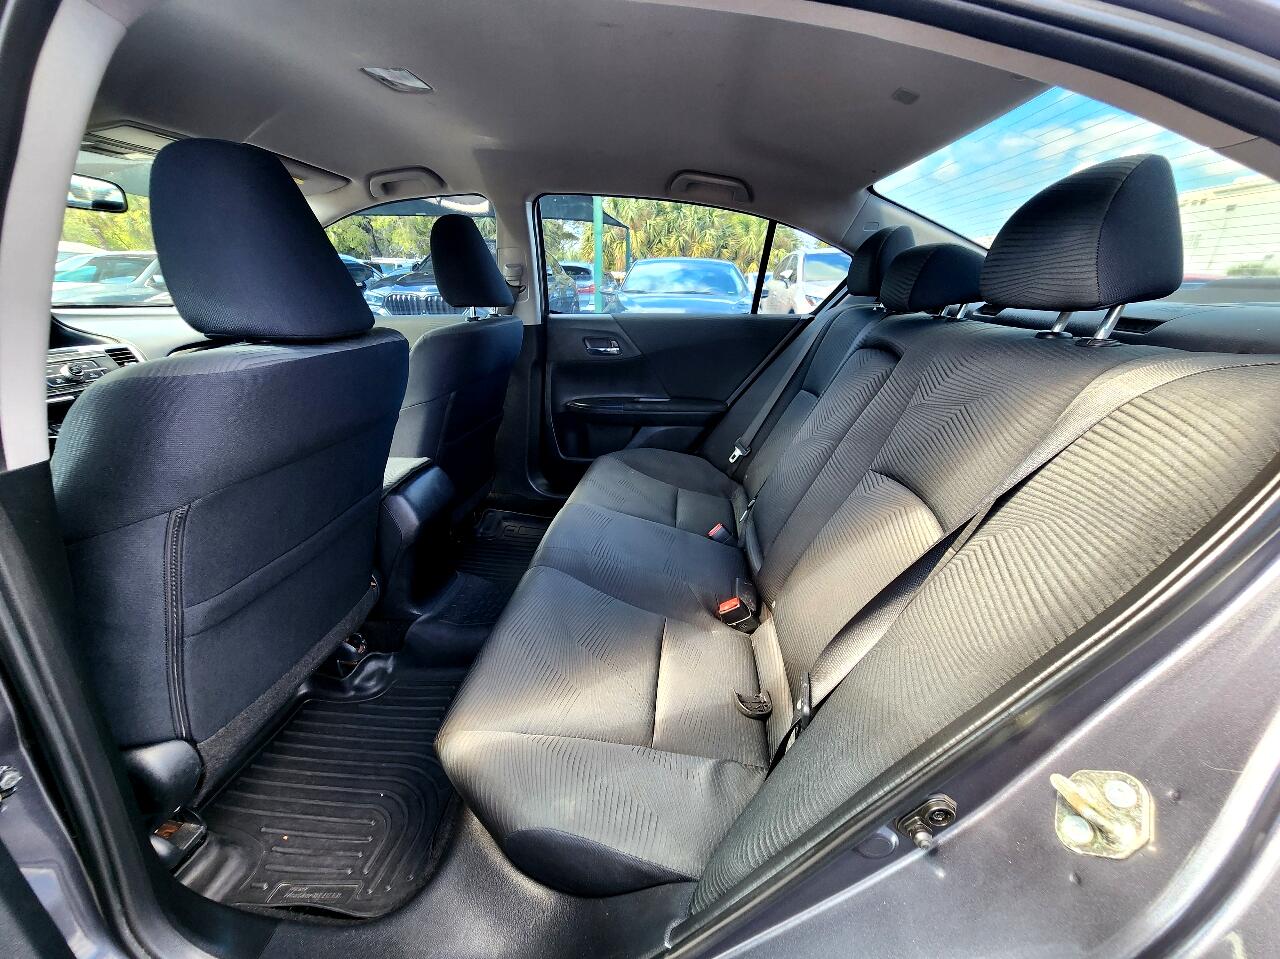 2017 HONDA Accord Sedan - $18,999